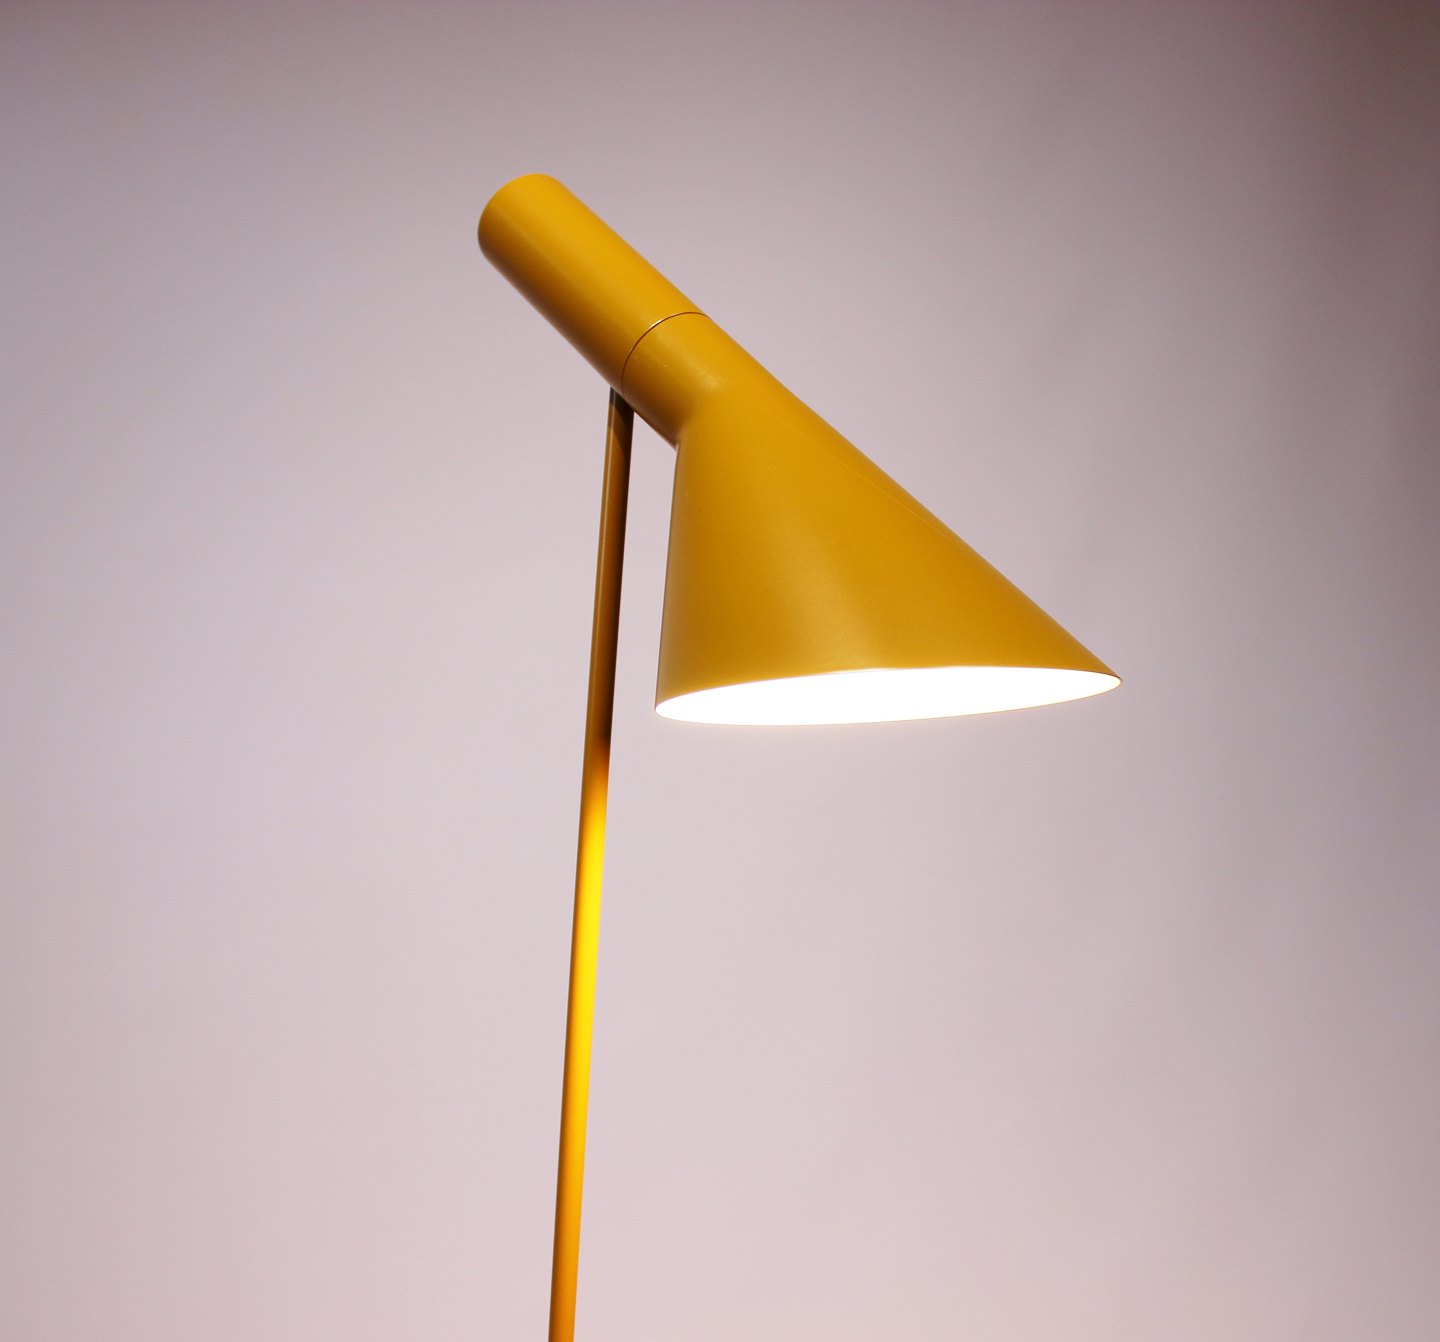 Temmelig lette Portico Gul gulvlampe designet af Arne Jacobsen i 1960 og fremstillet af Louis  Poulsen. - Osted Antik & Design